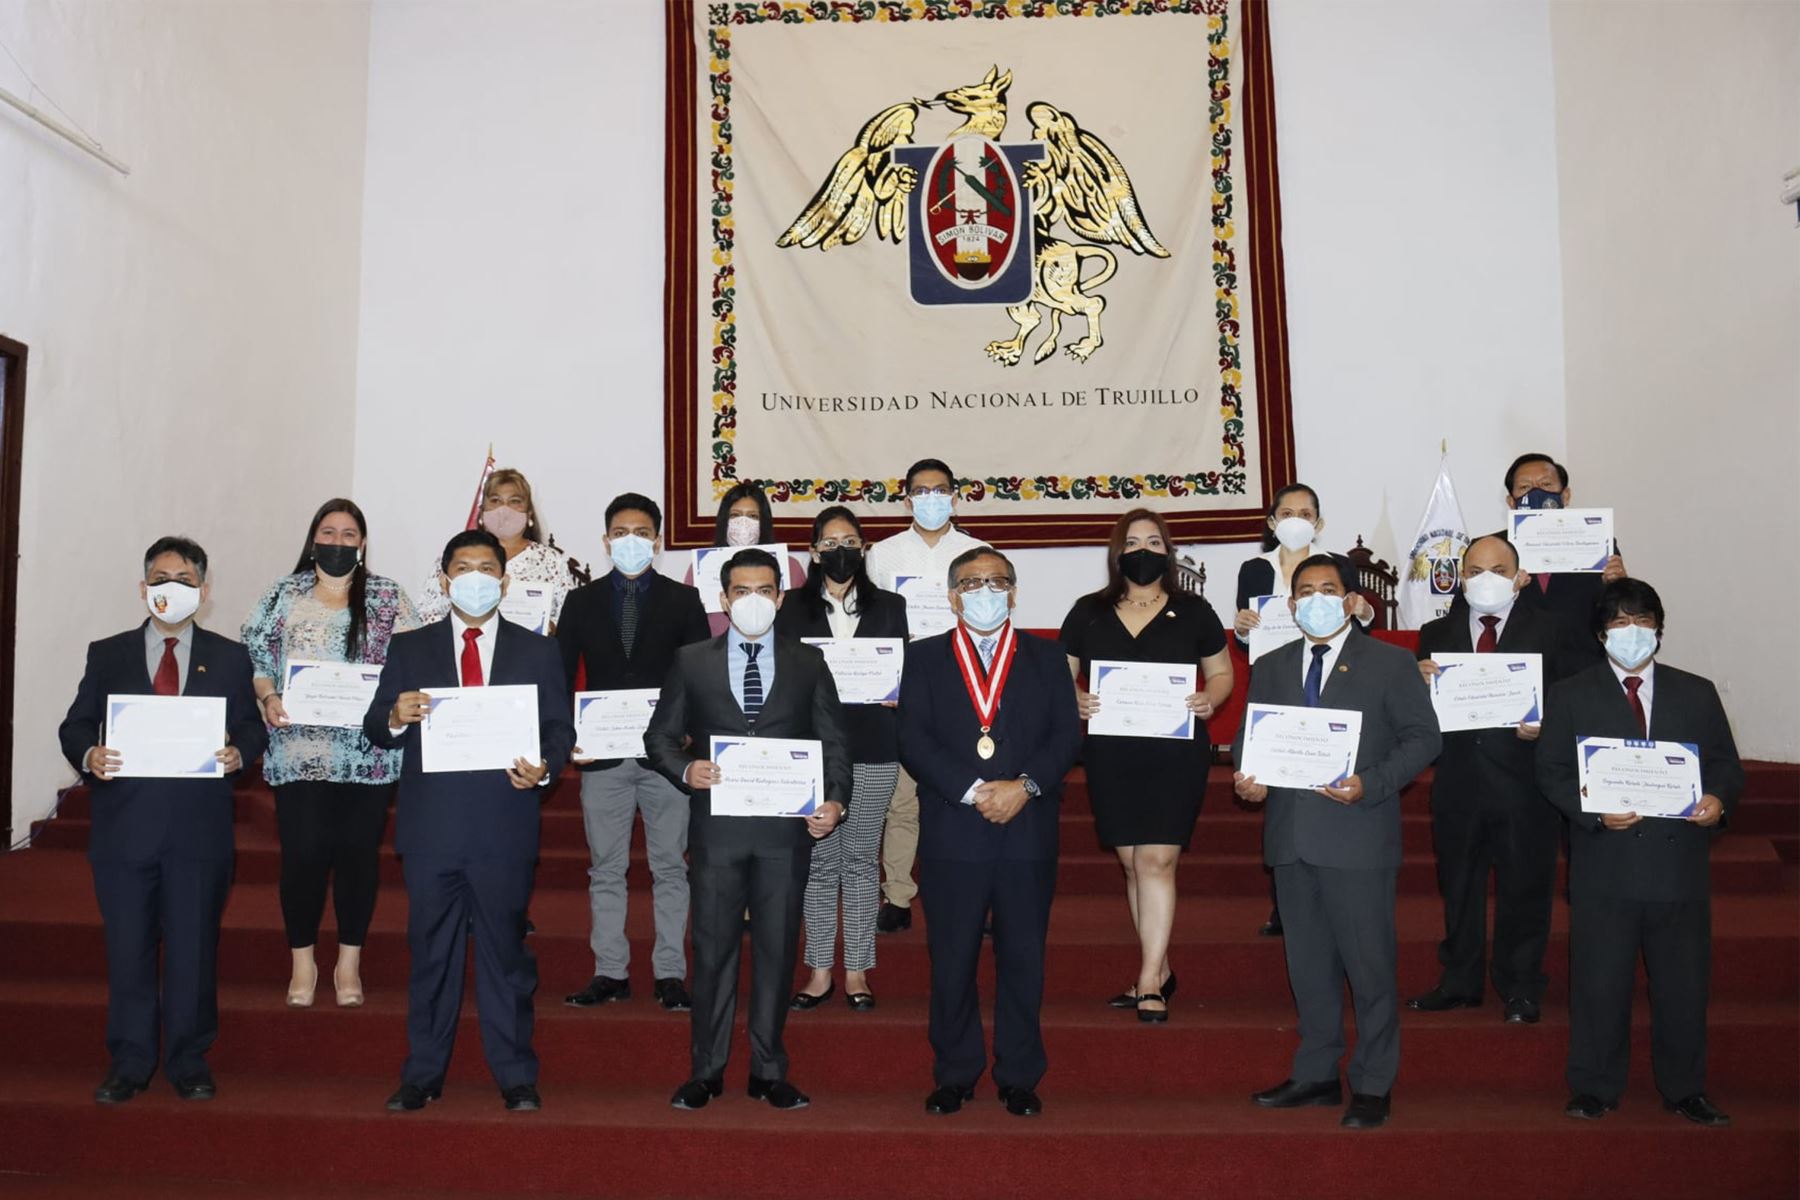 Los investigadores de la Universidad Nacional de Trujillo recibieron diplomas y placas recordatorias. Foto: ANDINA/Cortesía Vanessa Graos